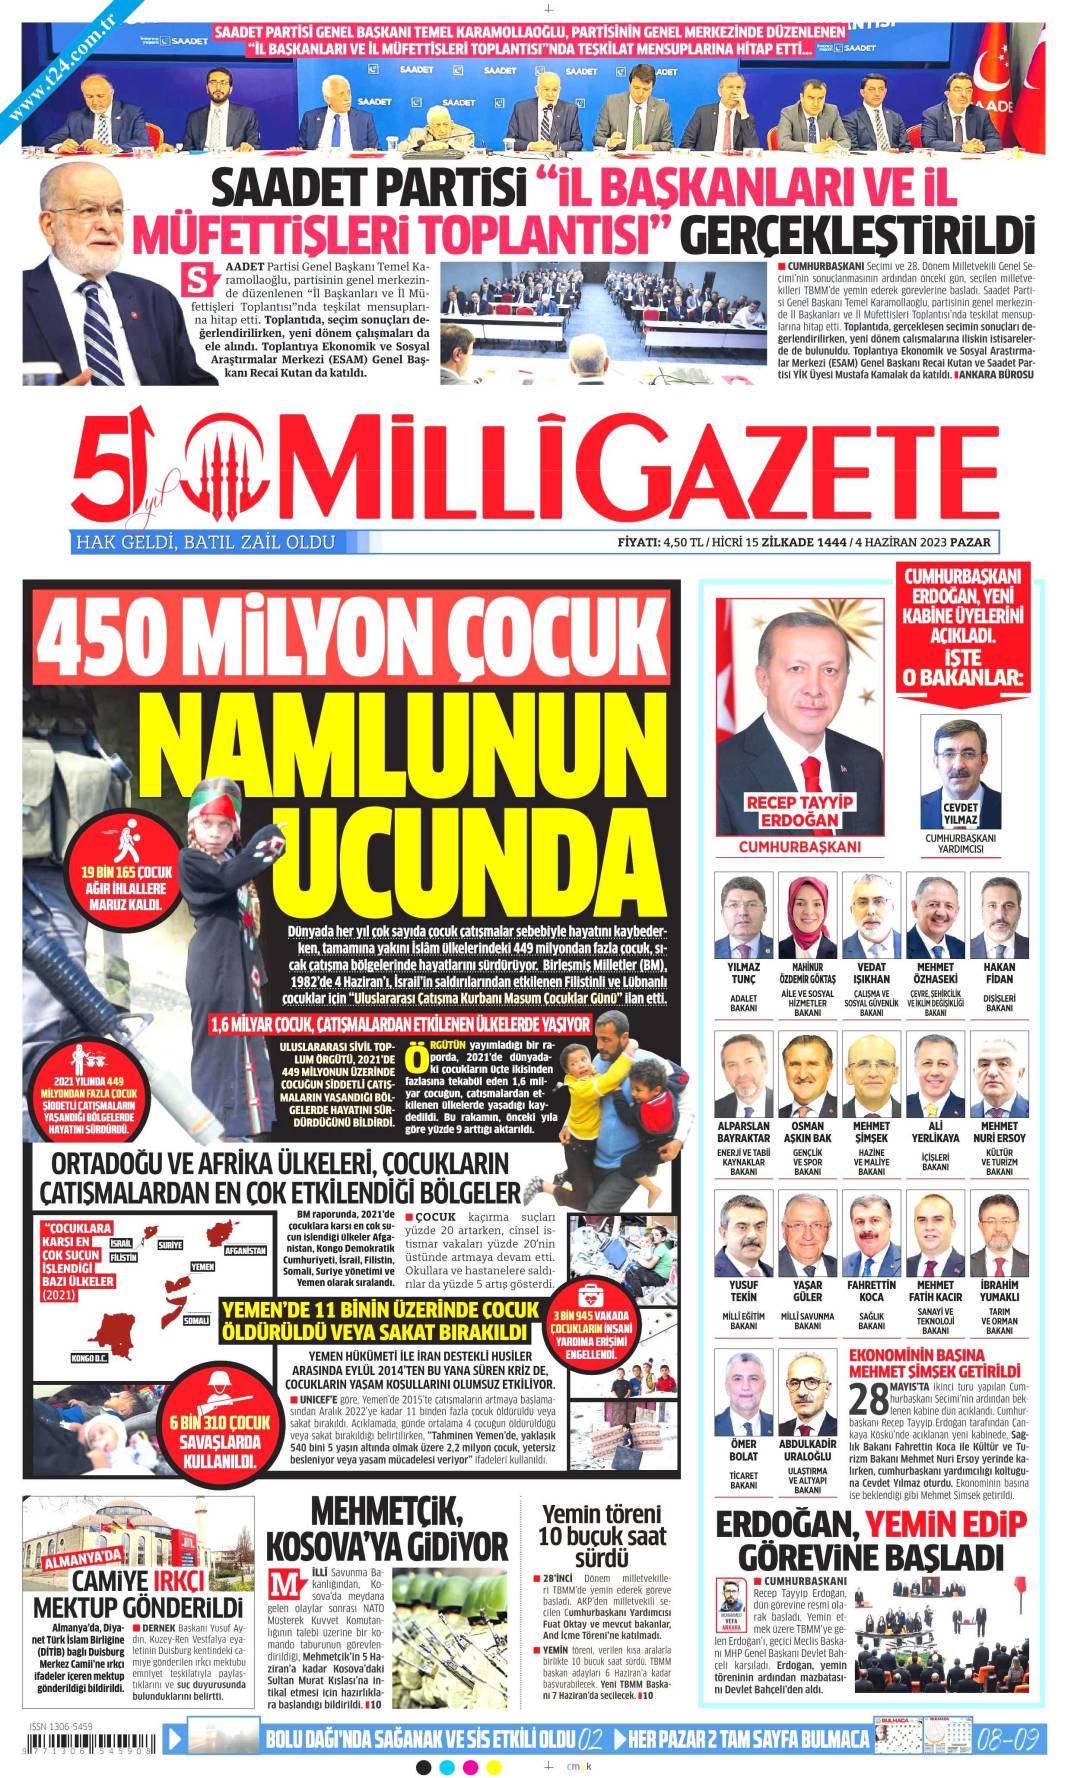 Gazeteler, Erdoğan’ın açıkladığı yeni kabine listesini manşetlerine nasıl taşıdı? İşte günün manşetleri 4